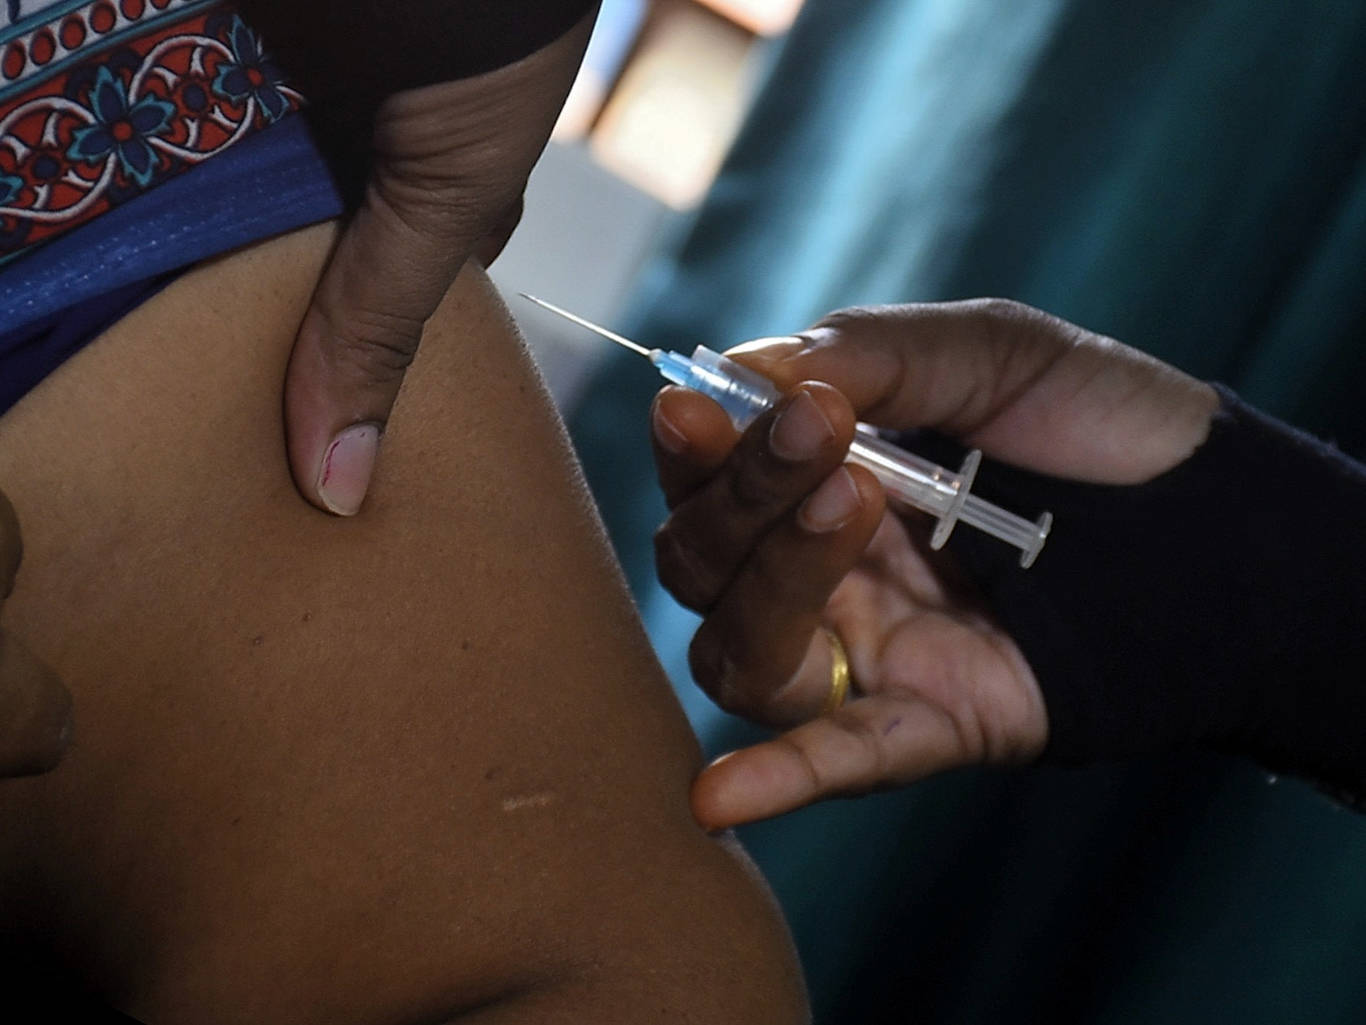 Η Ινδία θα διεξαγάγει στεγνό εμβόλιο COVID-19 σε εθνικό επίπεδο στις 2 Ιανουαρίου